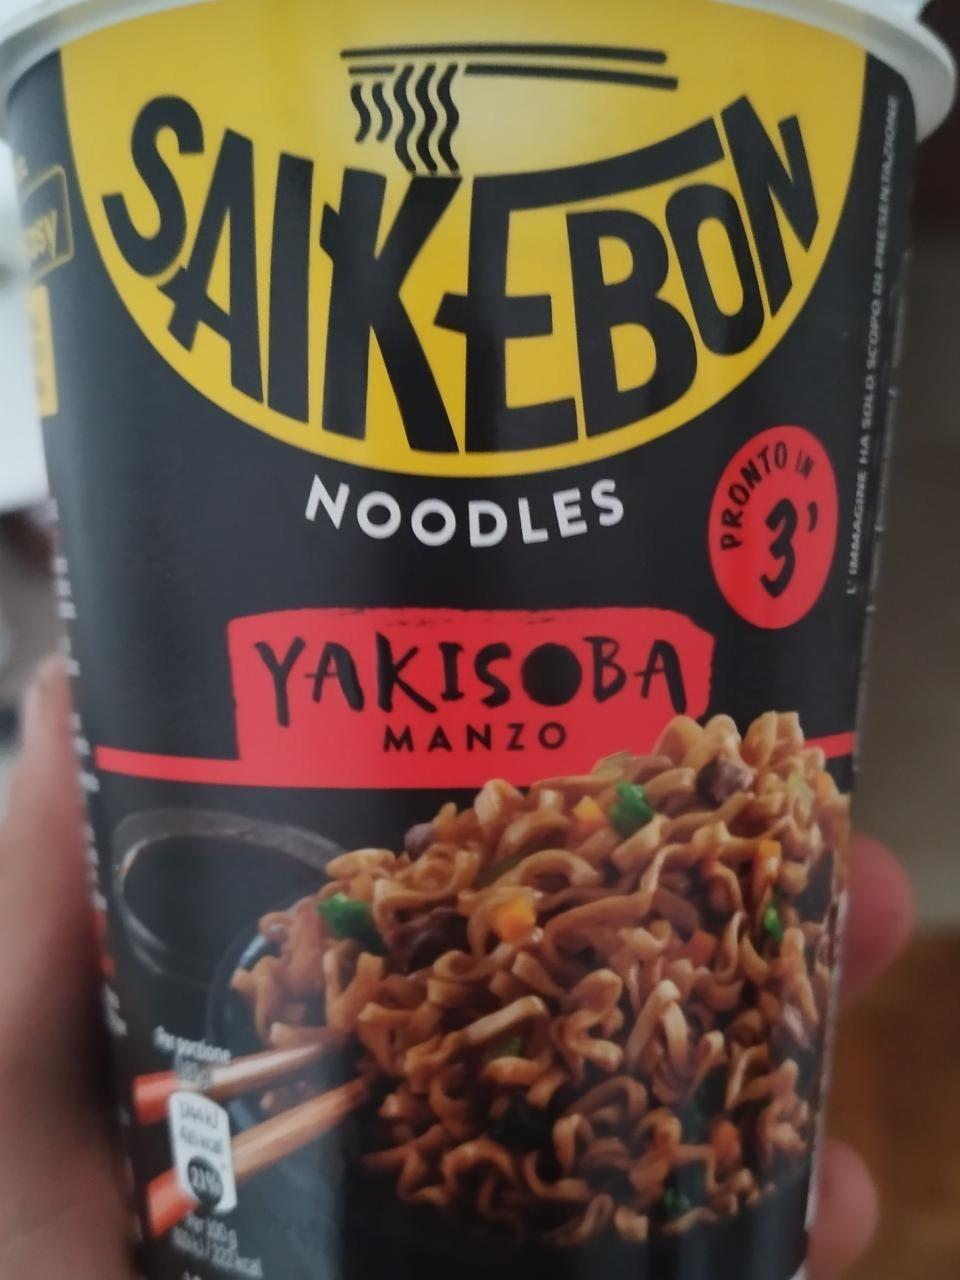 Фото - Noodles Yakisoba manzo Saikebon